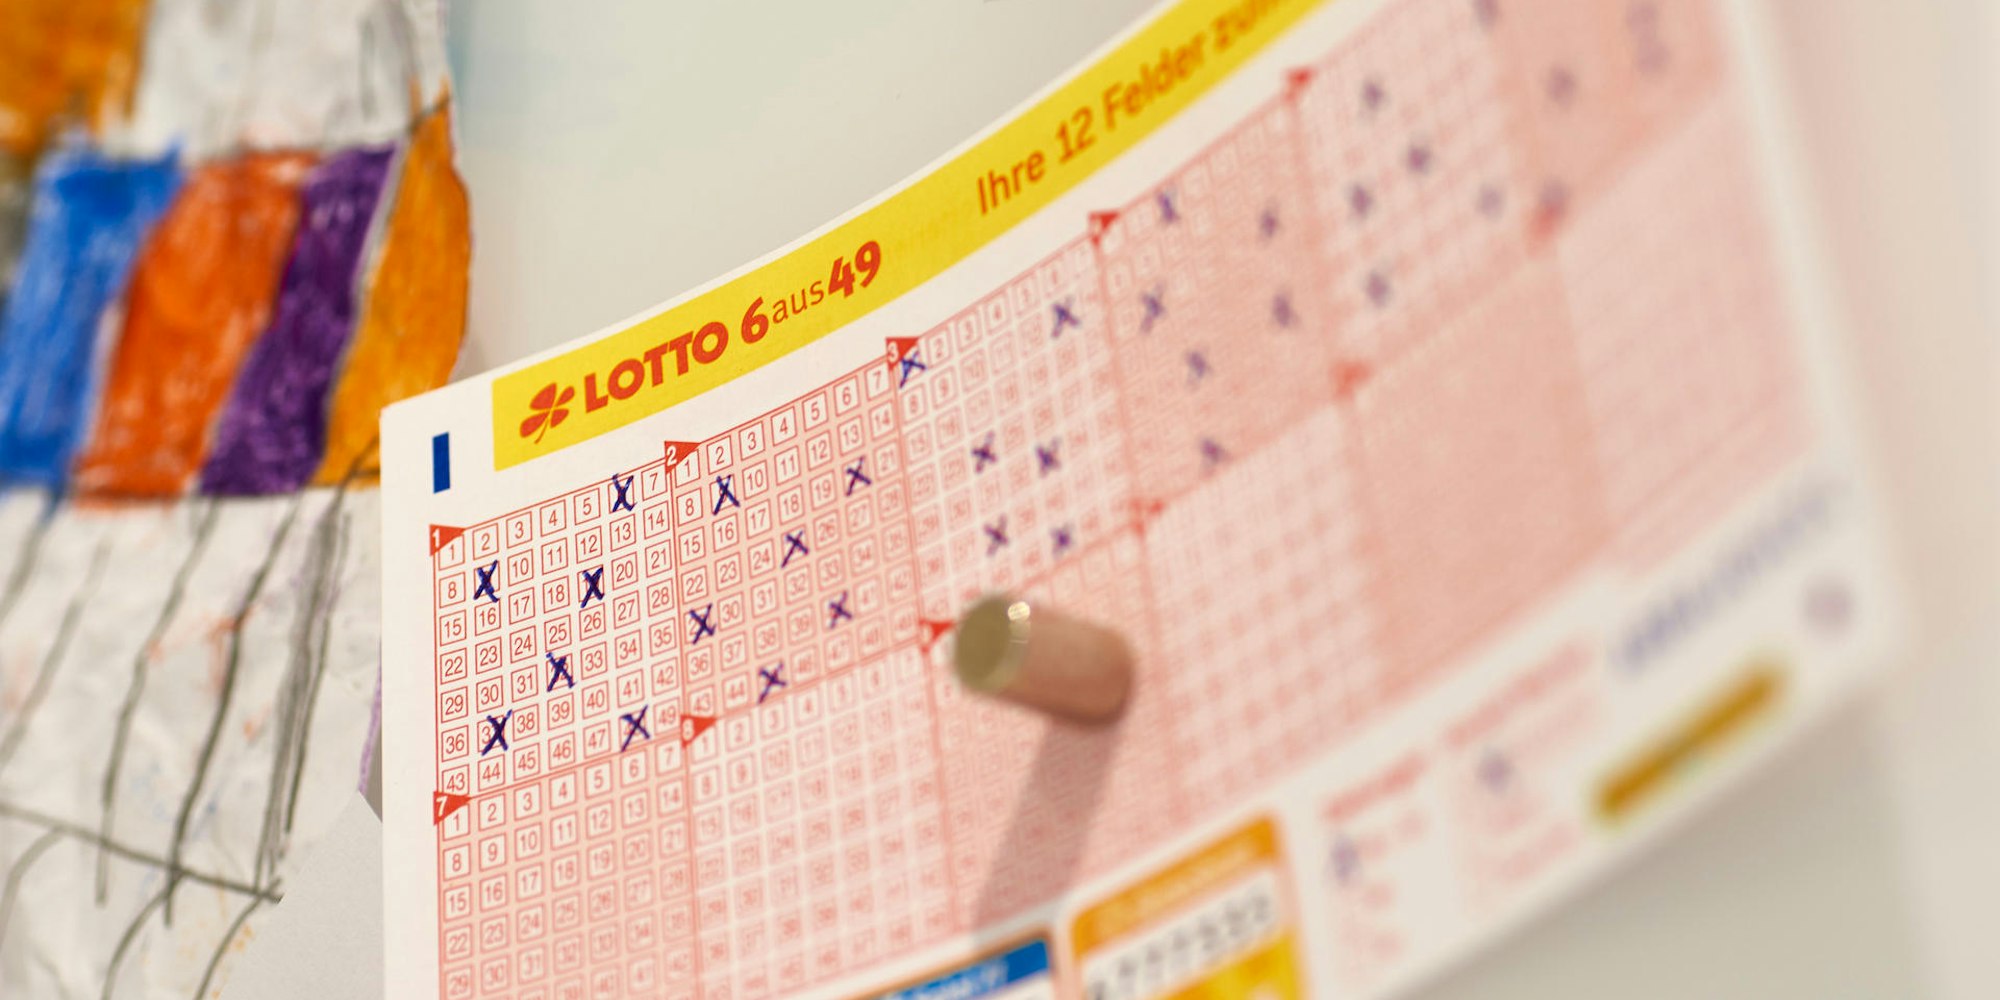 Am kommenden Samstag könnte die Freude groß sein: Bei LOTTO 6aus49 wartet der dritthöchste Jackpot des Jahres von 27 Millionen Euro auf einen Gewinner.